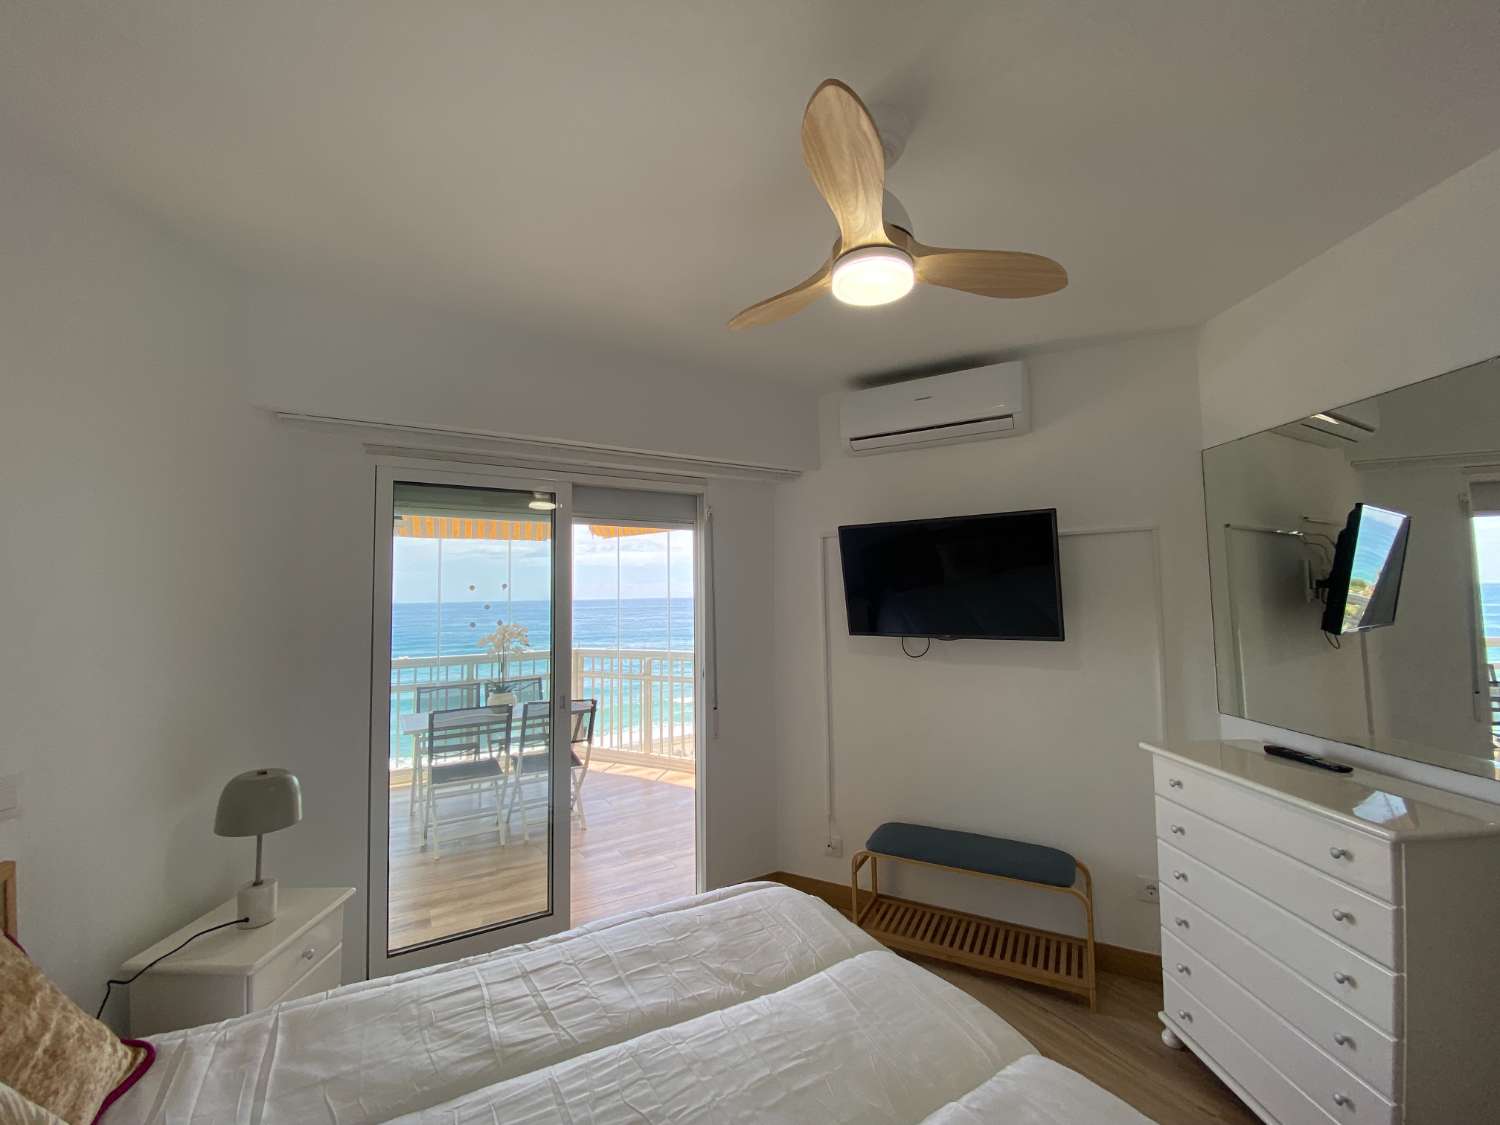 Incredibile appartamento ristrutturato con vista panoramica sul mare: la casa perfetta per gli amanti della spiaggia!&quot;